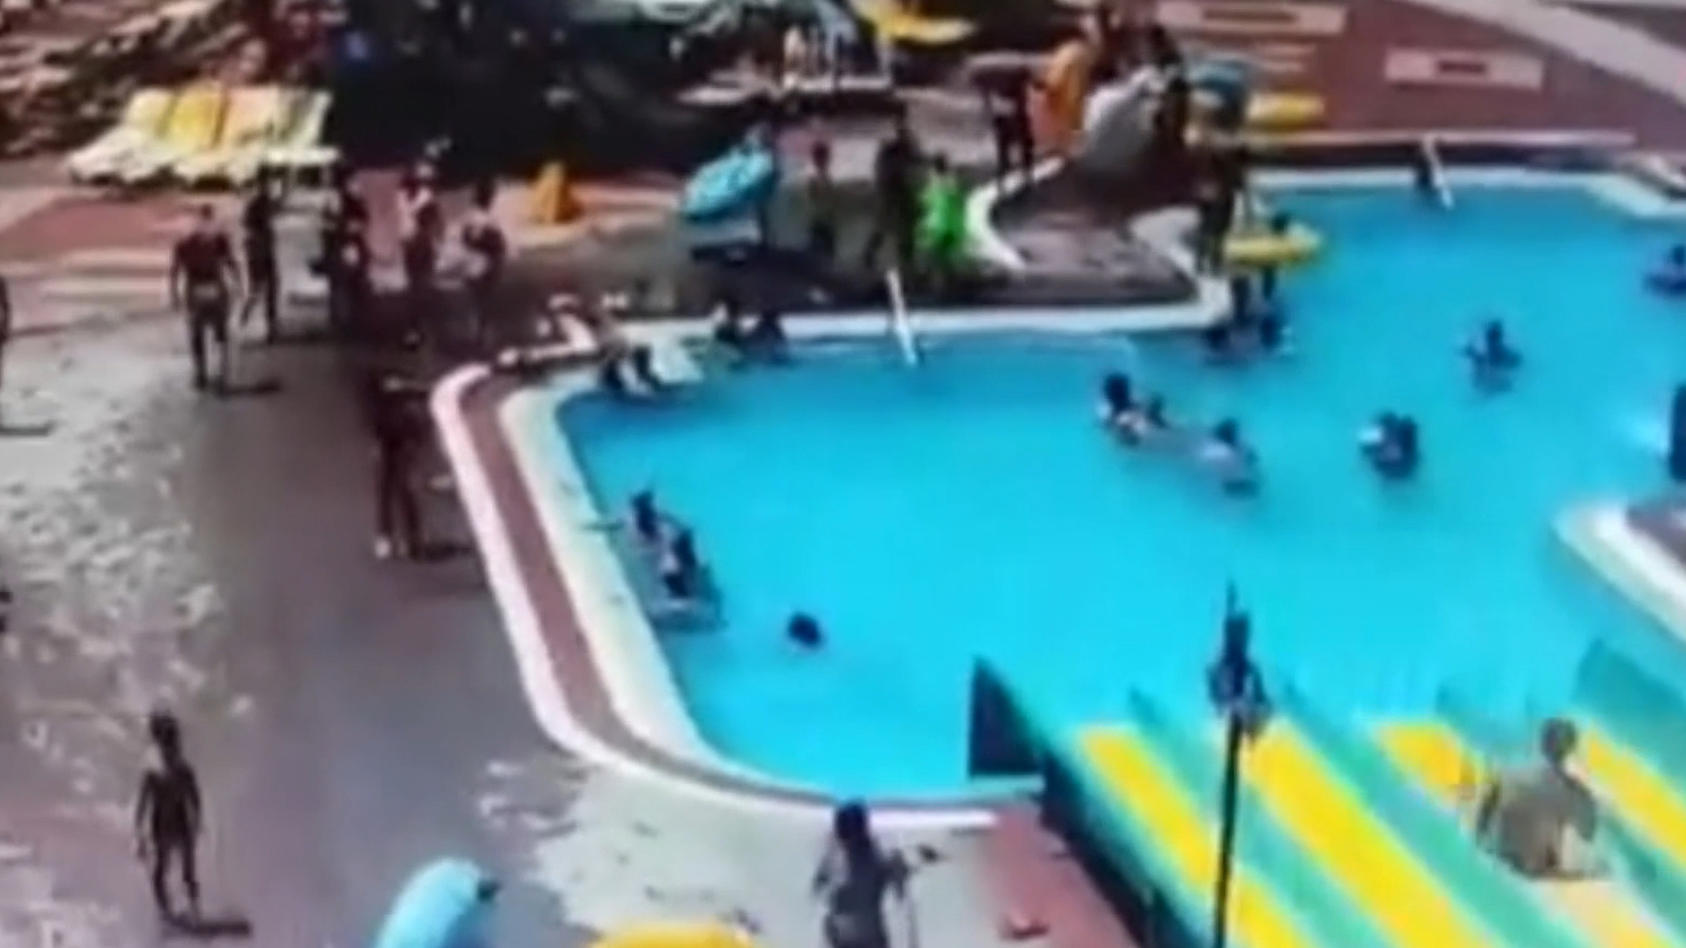 Tödlicher Wasserrutschen-Unfall in türkischem Hotel Tourist schlägt mit Kopf auf Betonboden auf Bild Foto